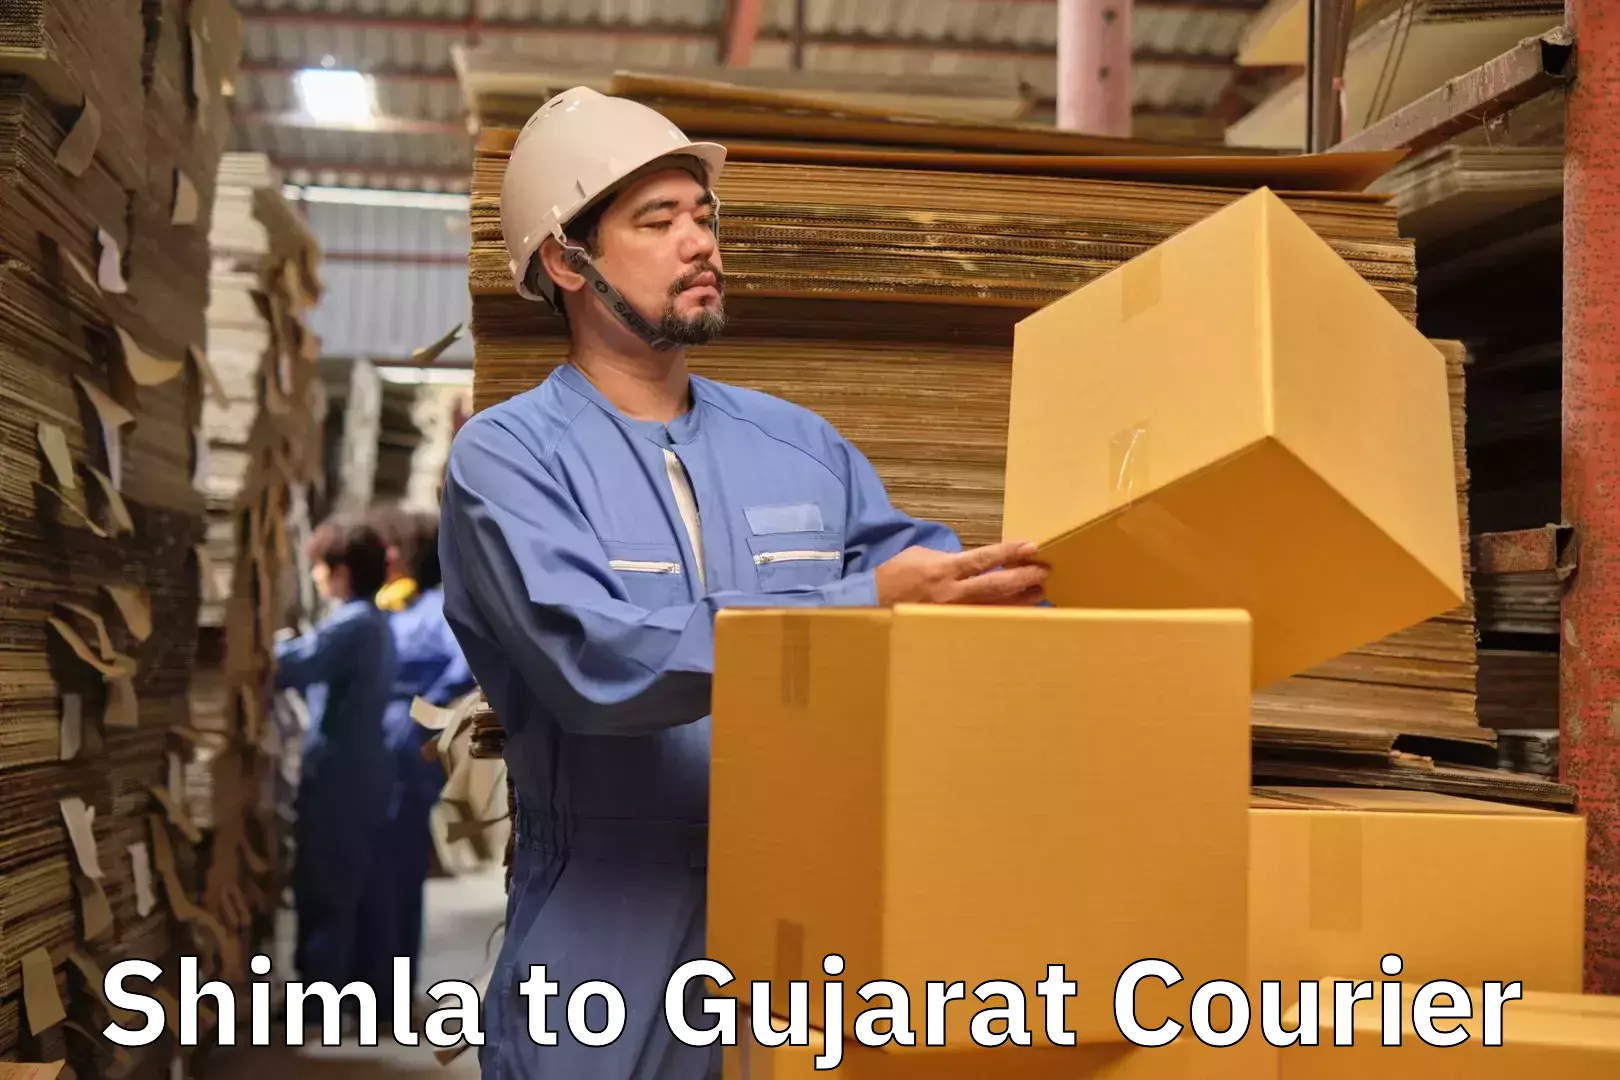 Luggage delivery app Shimla to Gujarat